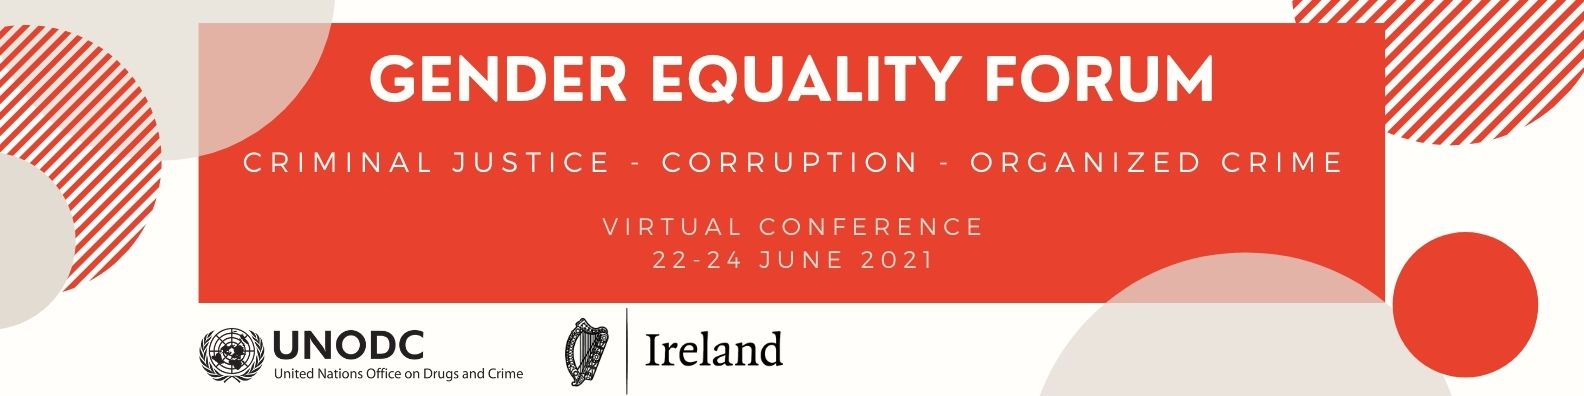 Gender Equality Forum - Criminal Justice, Corruption, Organized Crime - Virtual Conference 22-24June 2021